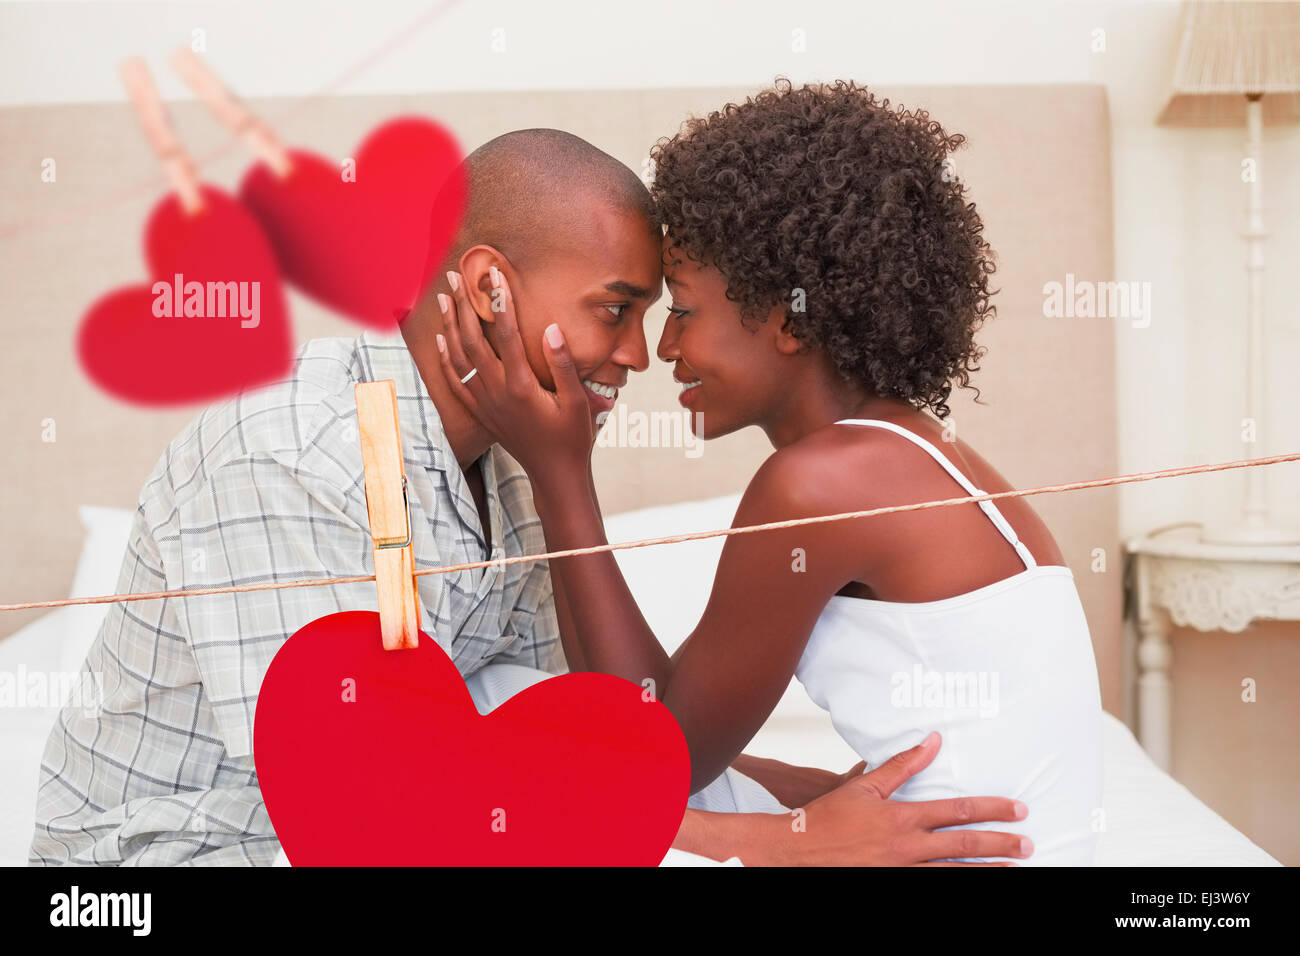 Immagine composita della coppia felice mostrando affetto sul letto Foto Stock